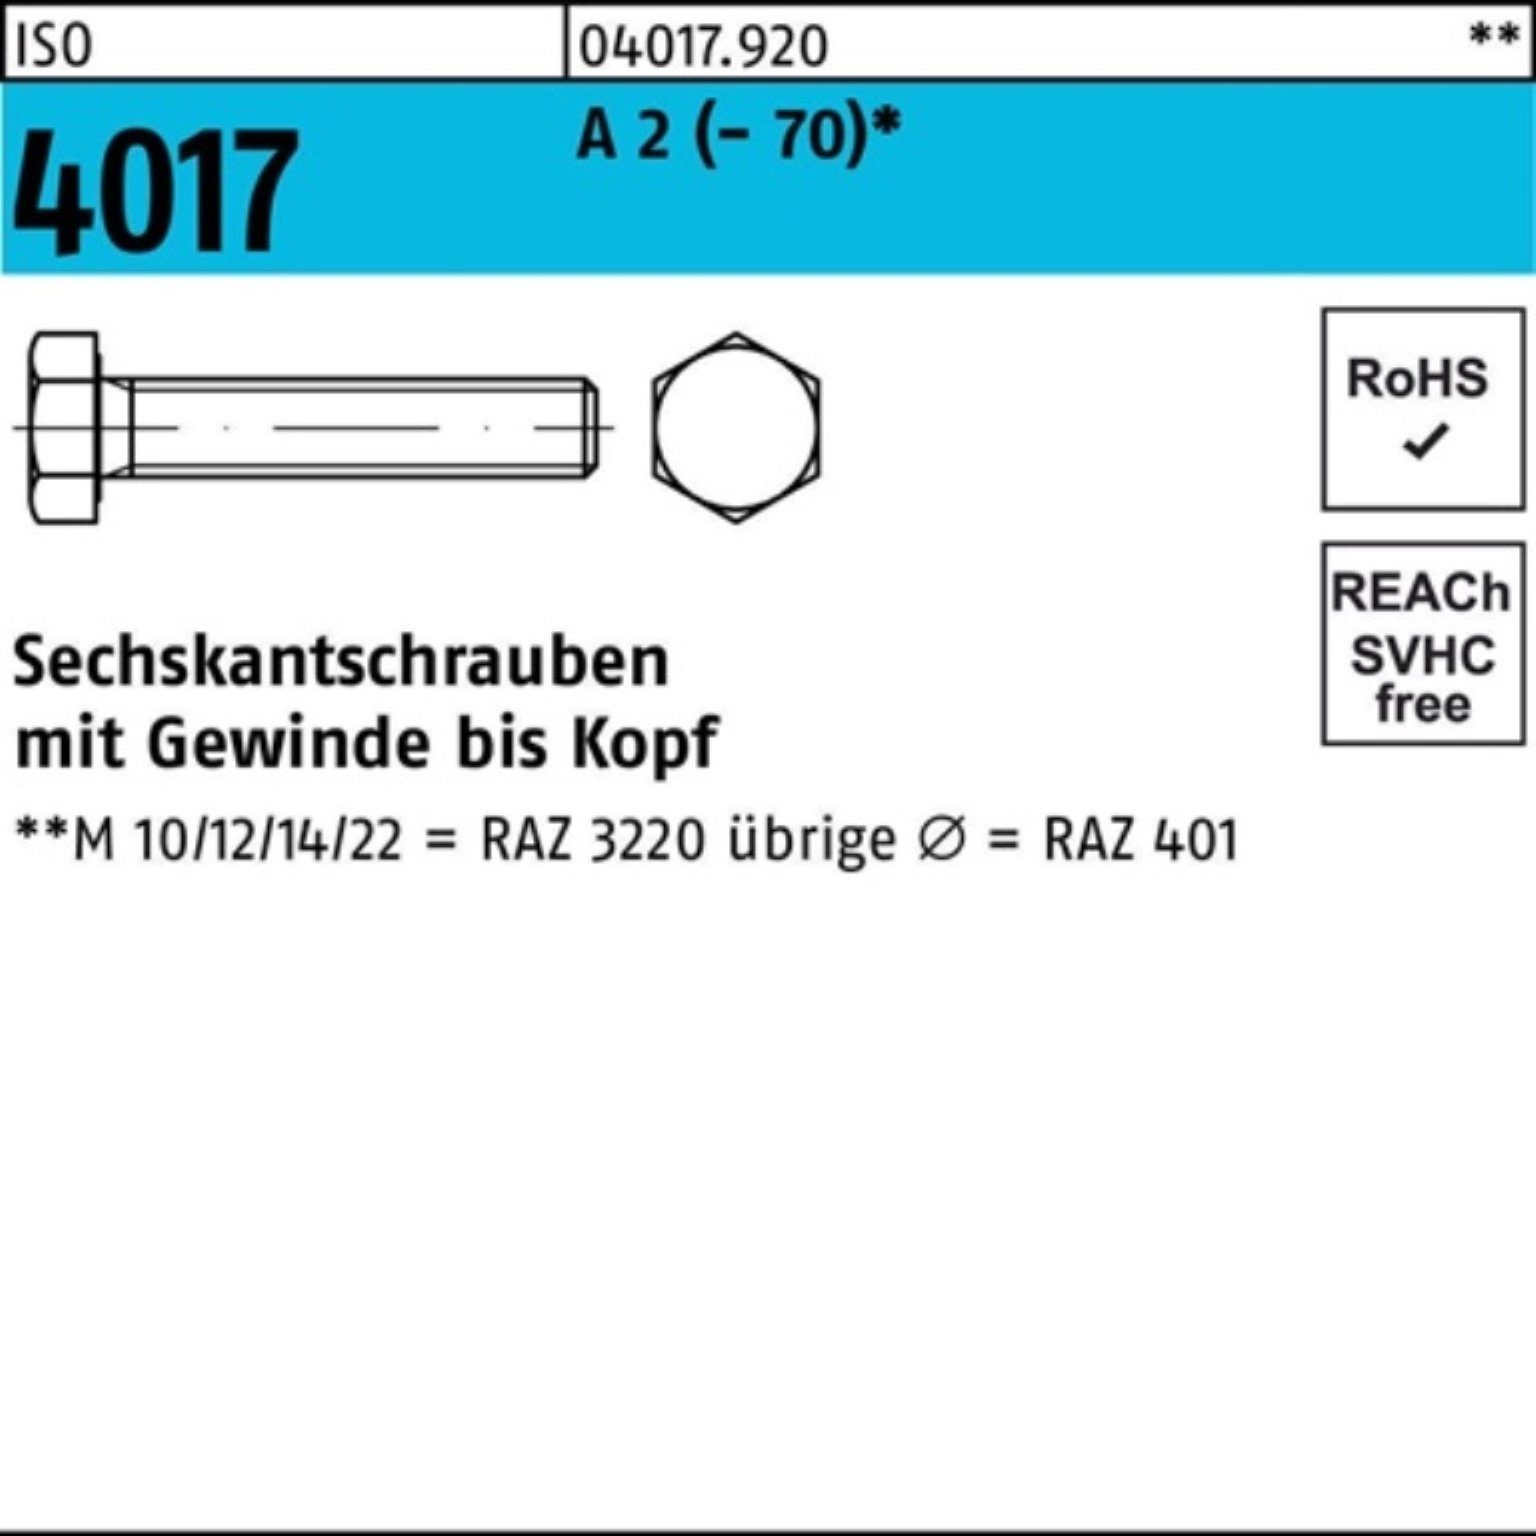 Bufab Sechskantschraube 100er Pack Sechskantschraube ISO 4017 VG M8x 25 A 2 (70) 100 Stück